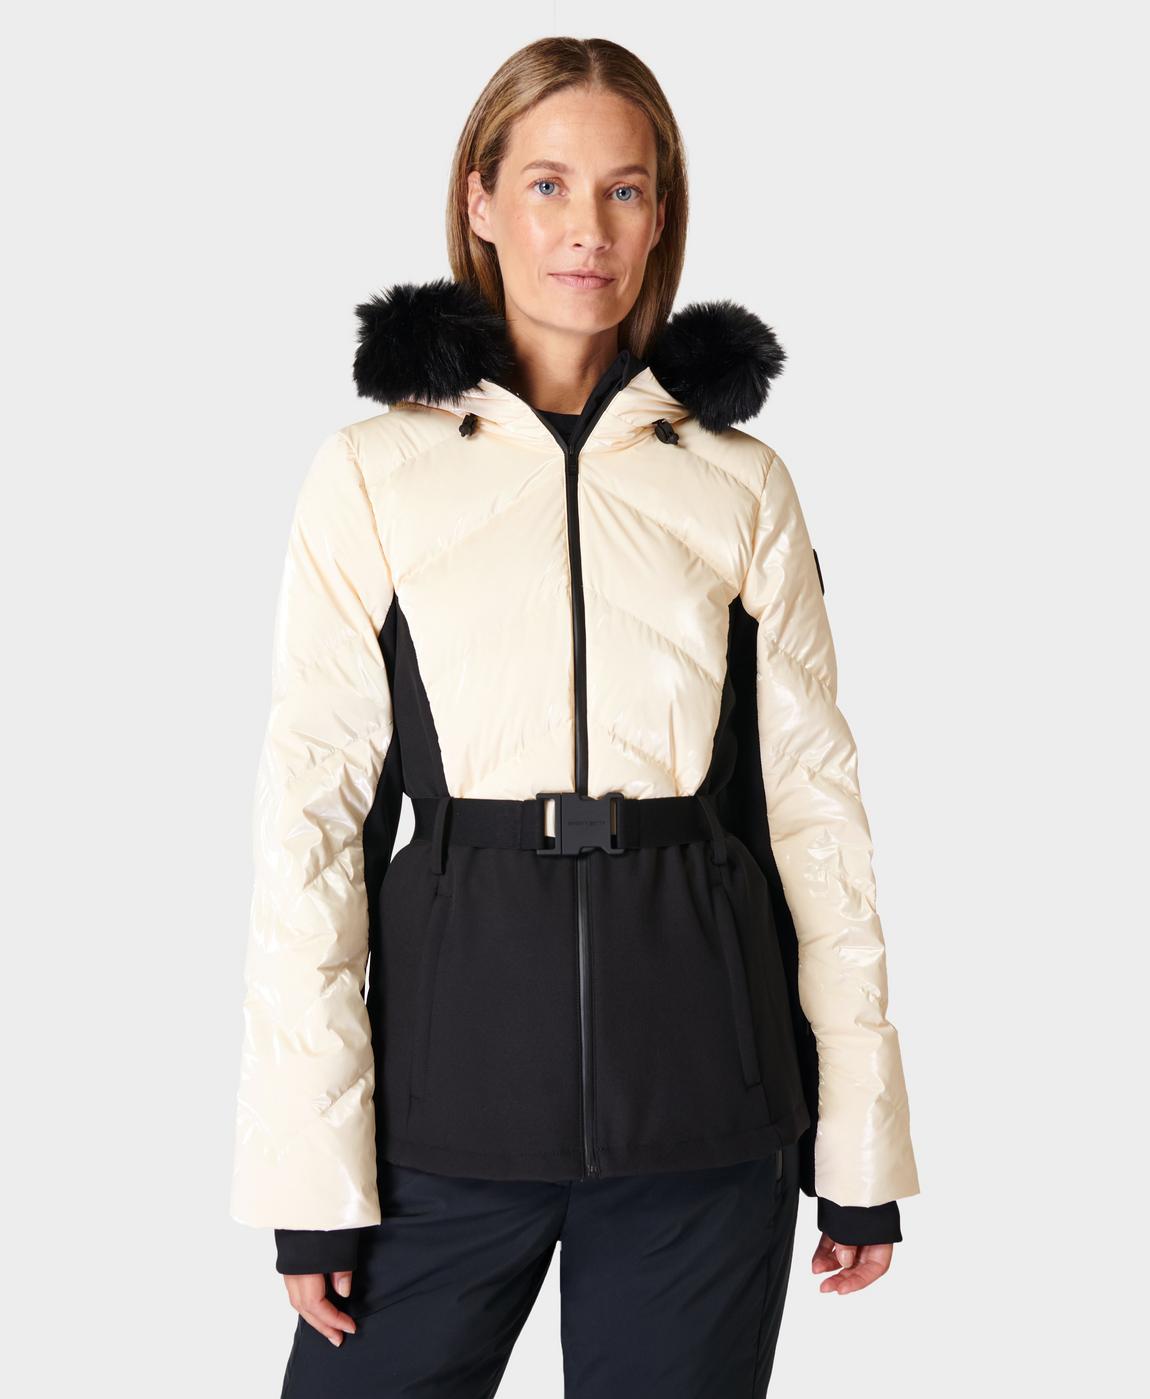 Glacier Ski Jacket - Studio White, Women's Ski Clothes